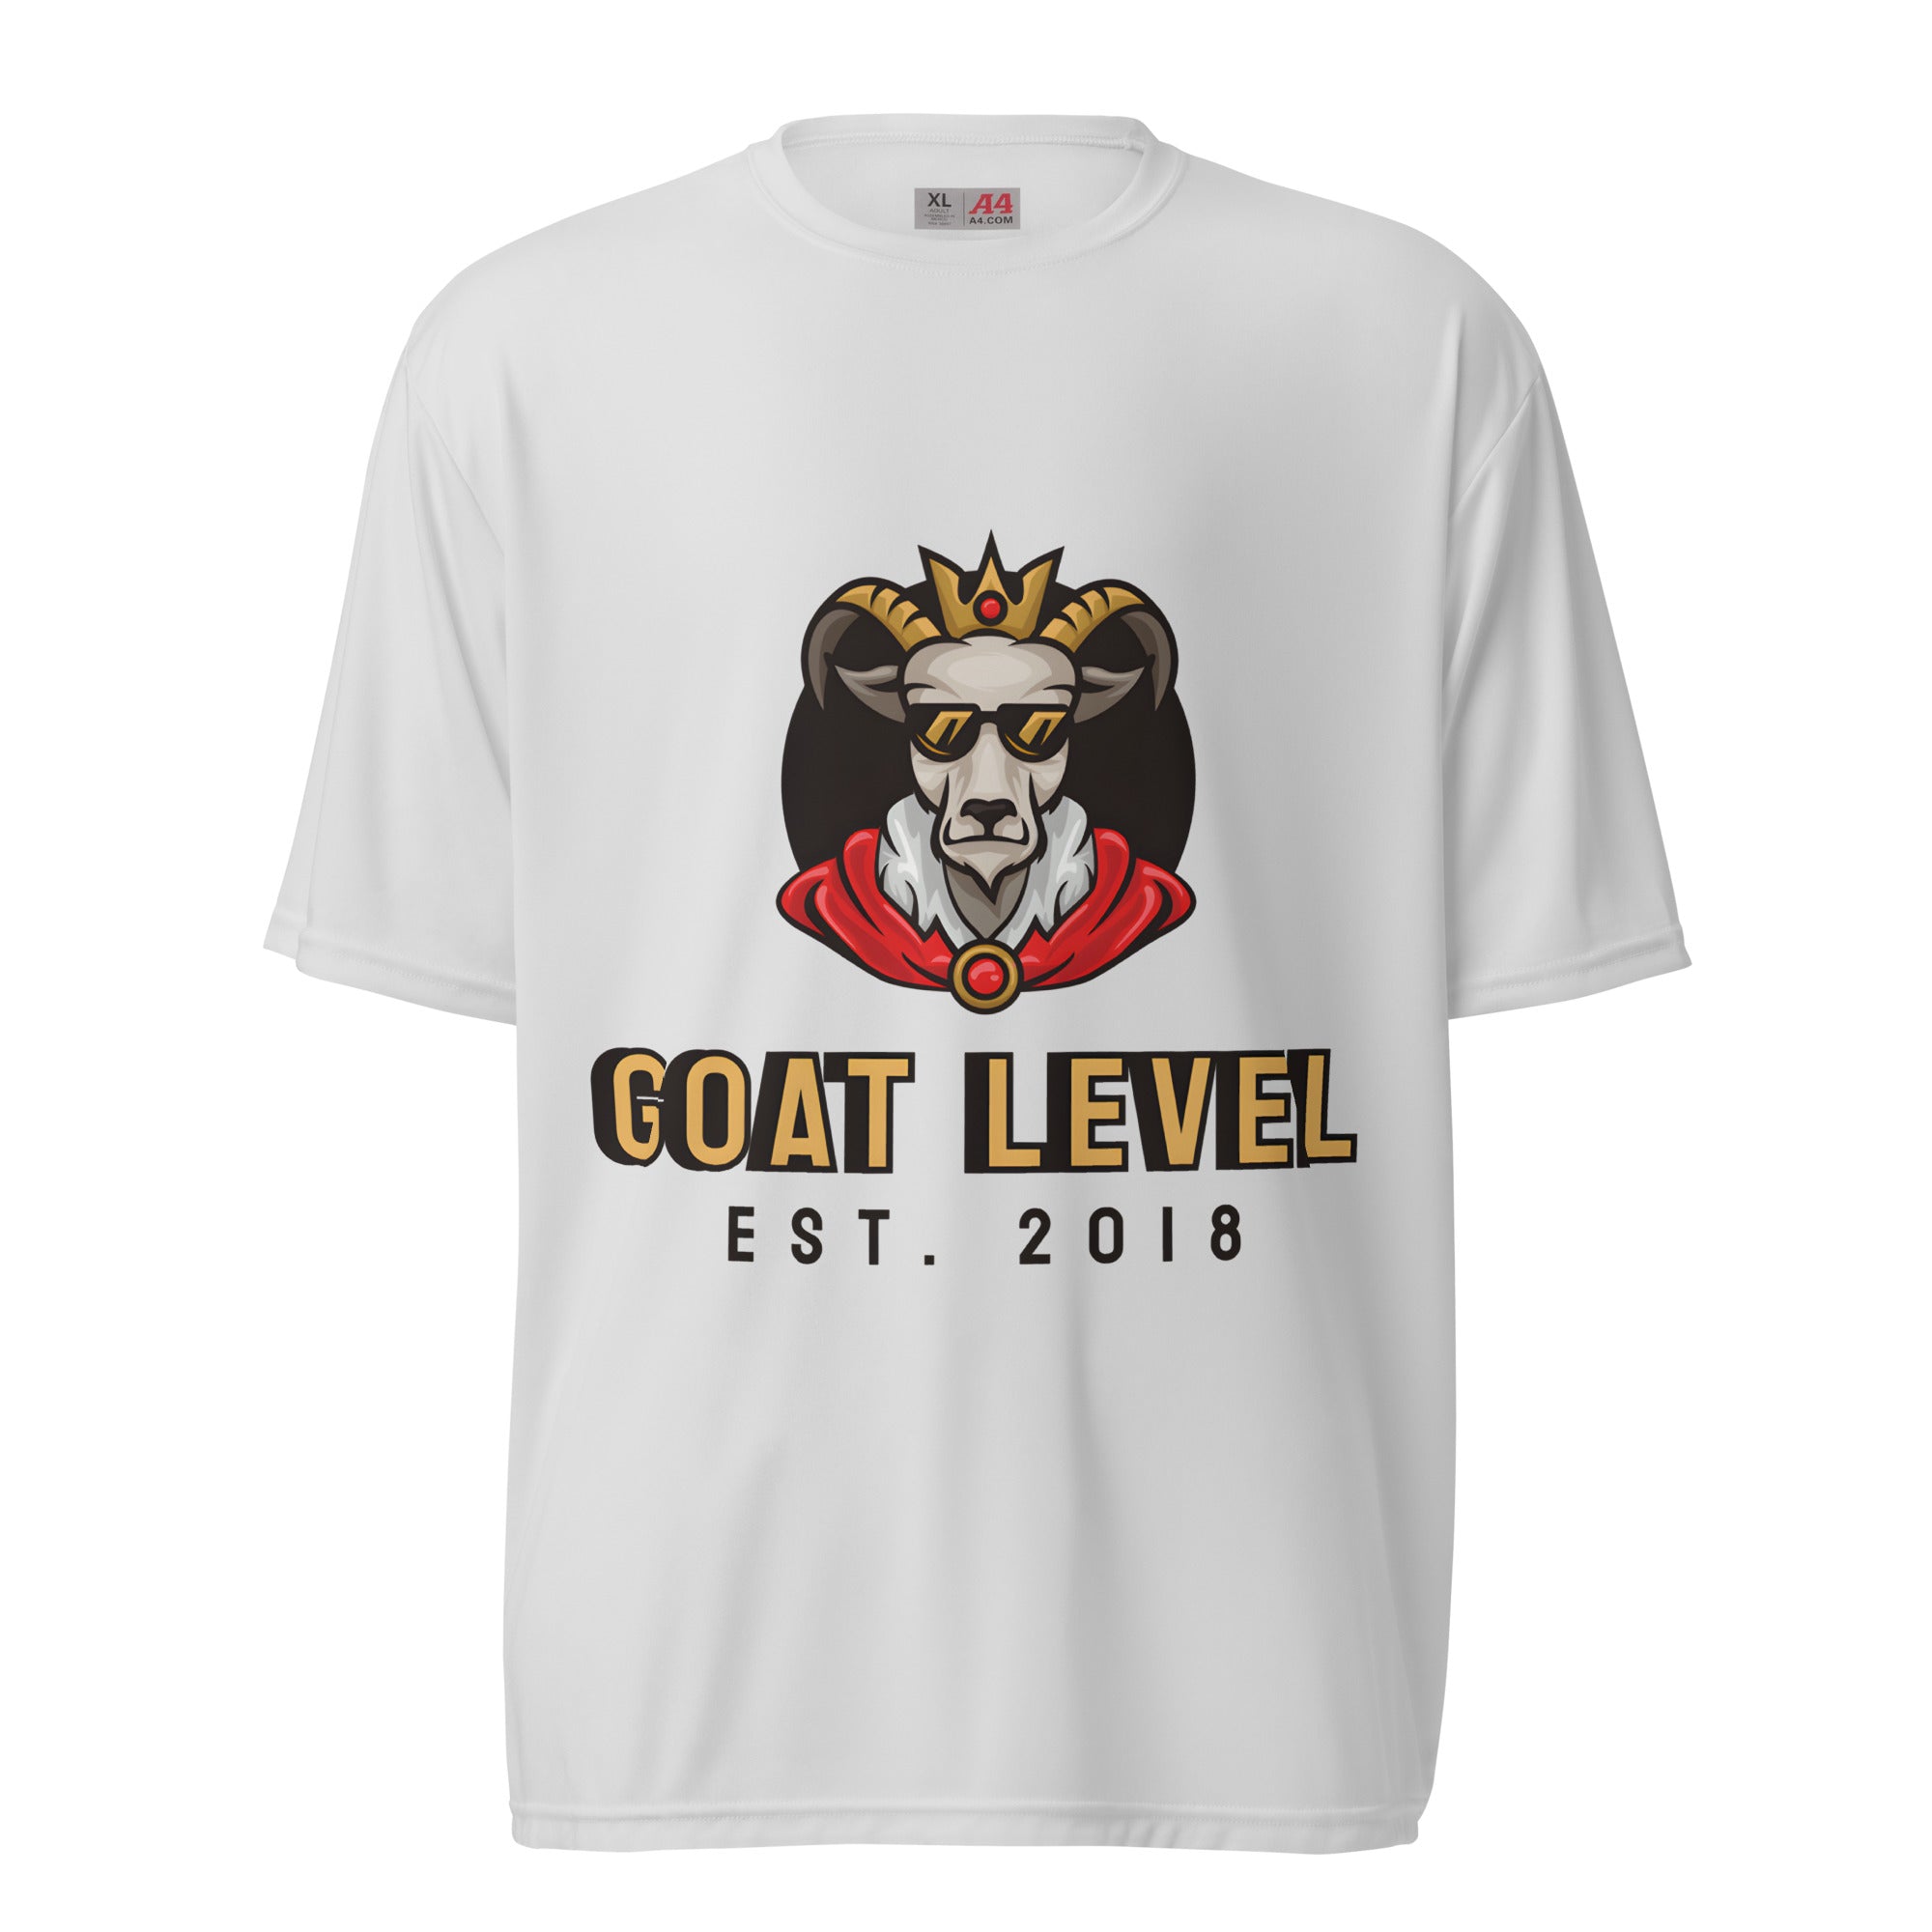 GOAT Level 2018 Unisex performance crew neck t-shirt